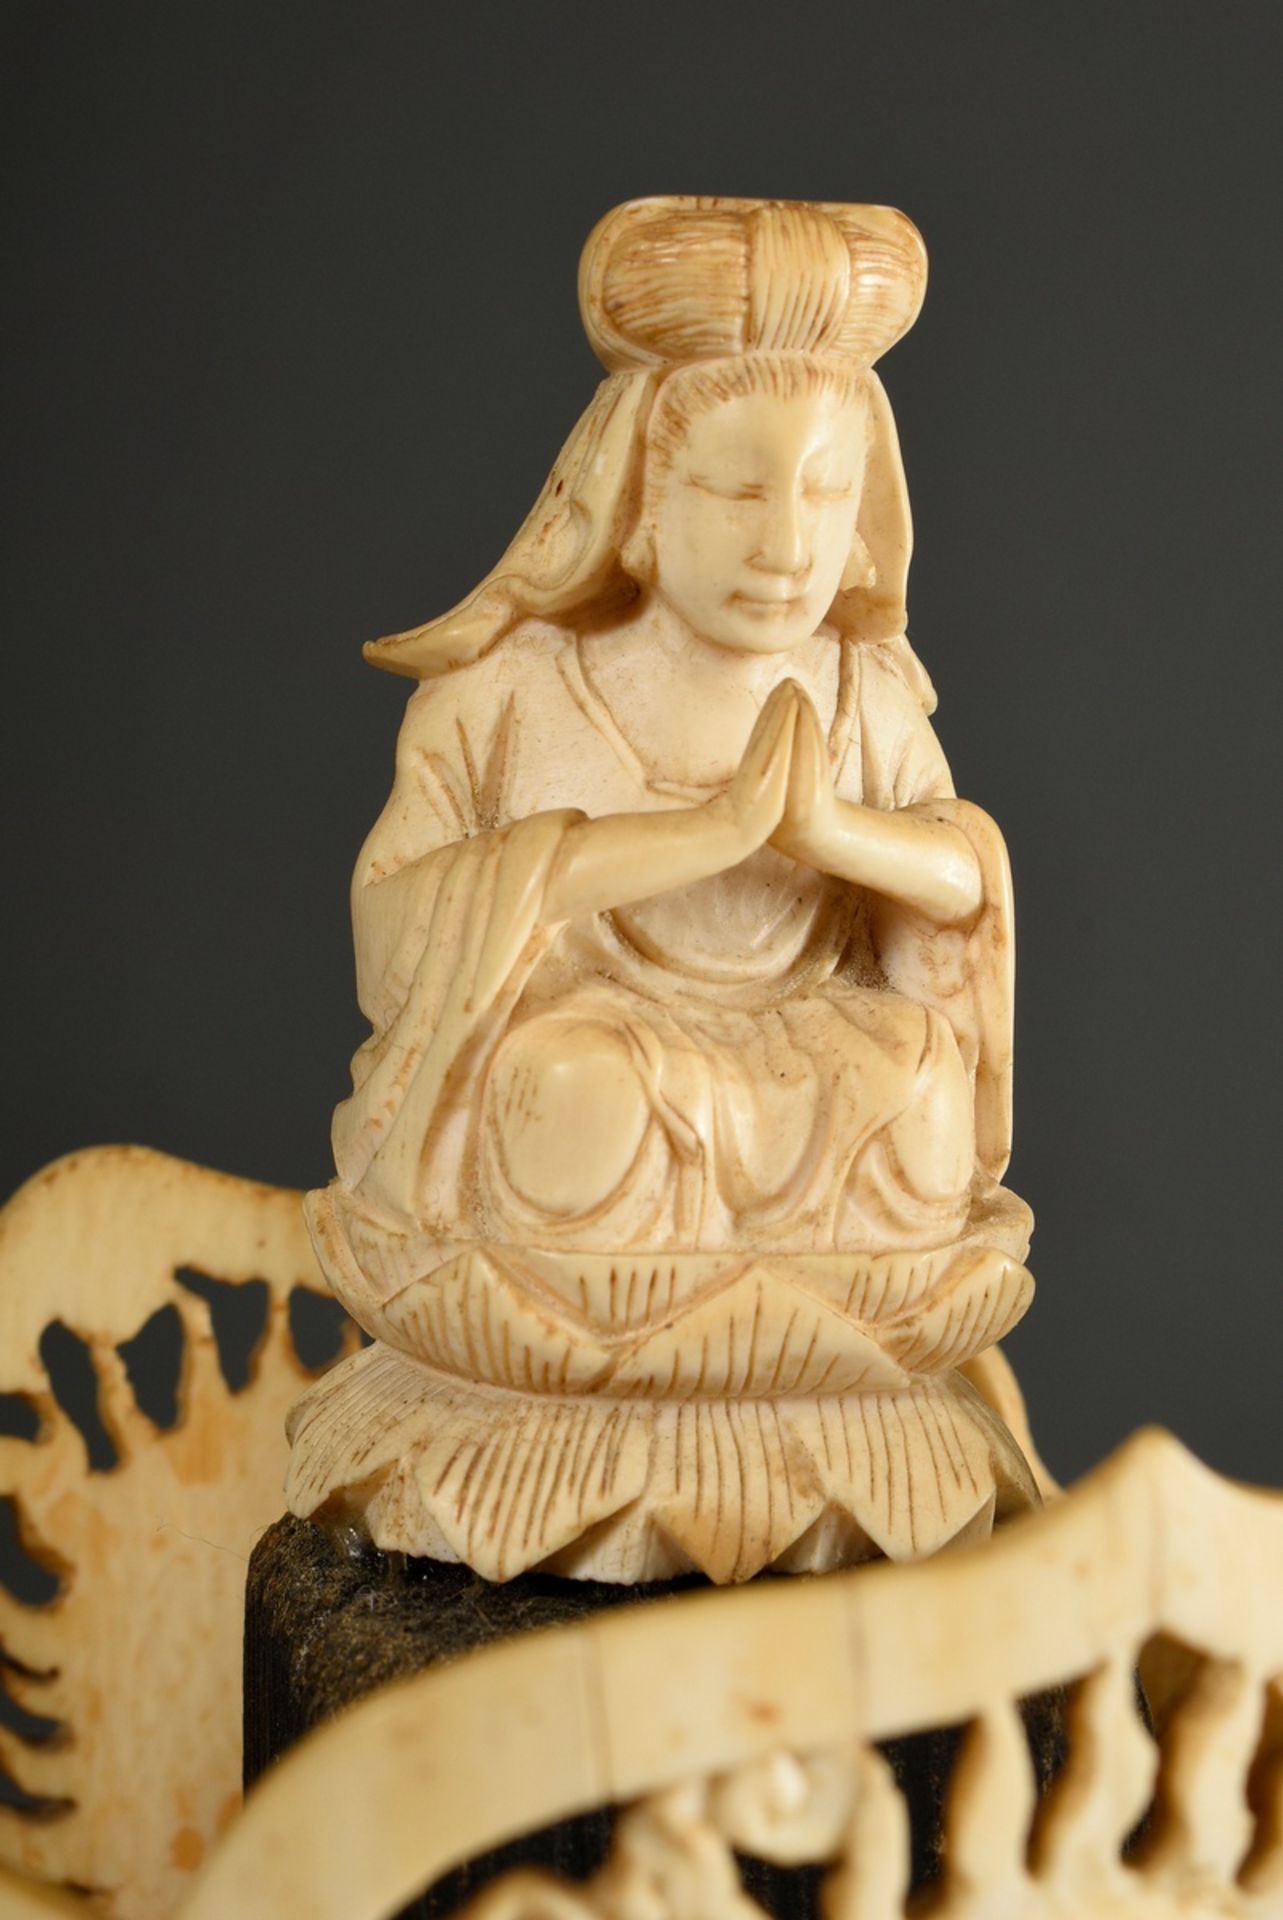 Große Elfenbein Schnitzerei "Kopf der Guanyin" mit durchbrochener Krone und Darstellung des Buddha - Bild 4 aus 11